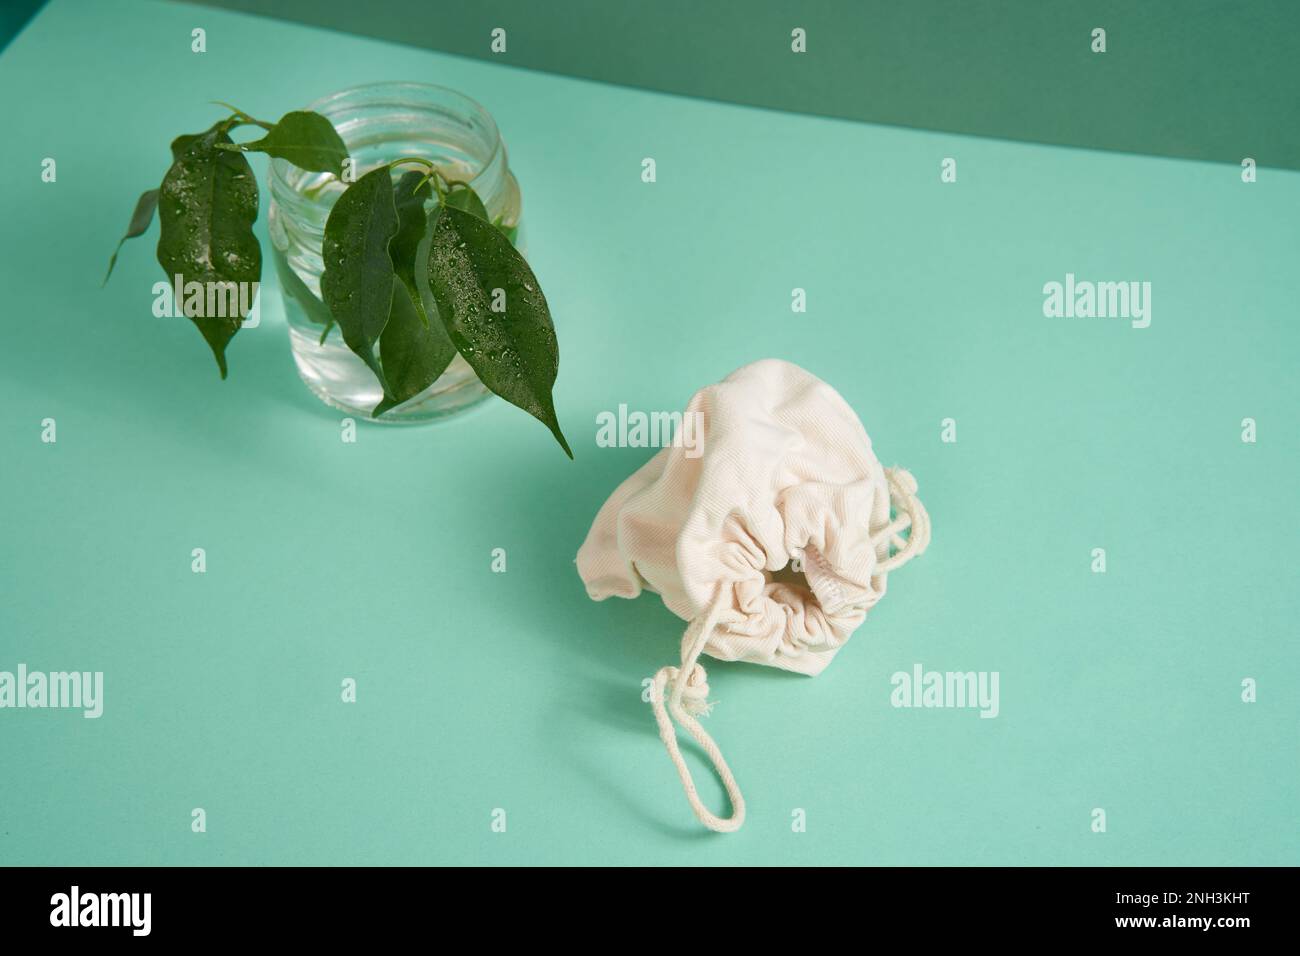 Eine weiße Baumwolltasche für Ihr Produkt neben einem grünen Ast auf hellgrünem Hintergrund. Das Konzept von Ökologie, Energie, Layout für Ihre Werbung. Draufsicht. Stockfoto